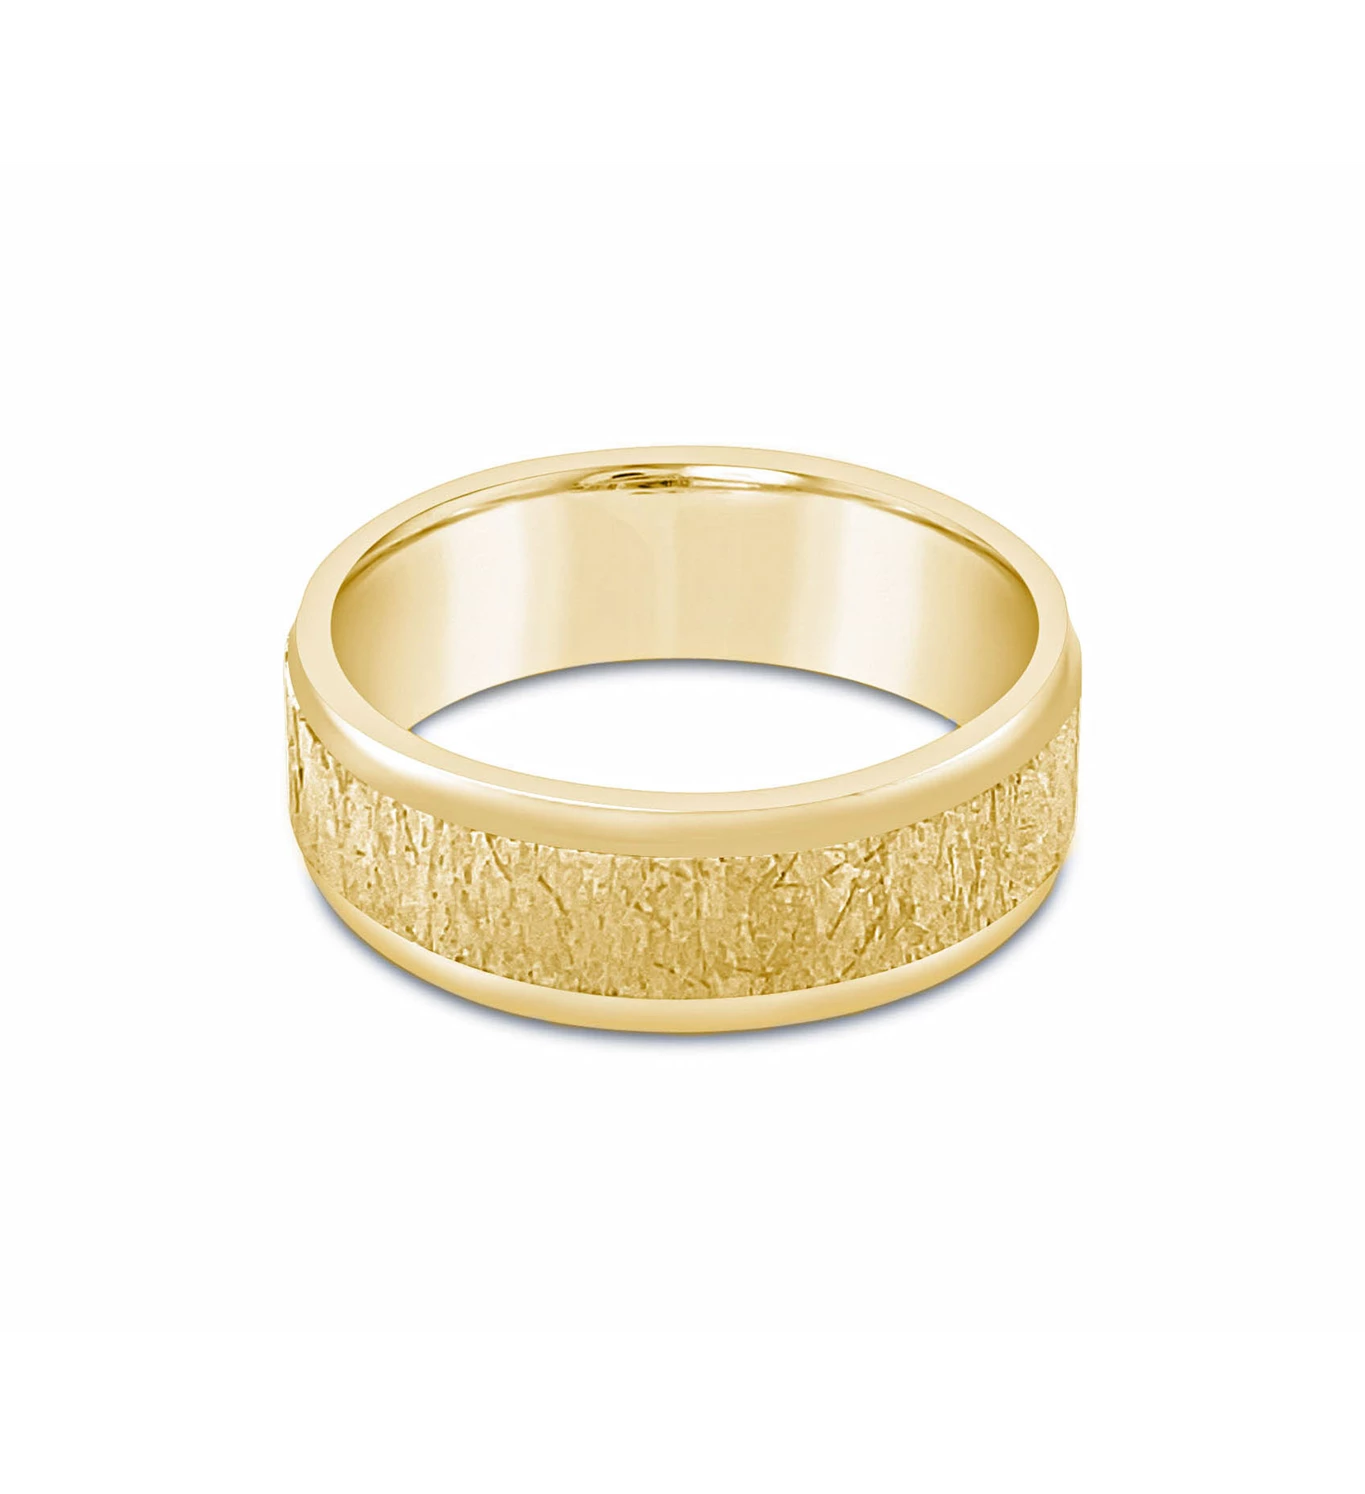 Signed zlatni vjenčani prsten